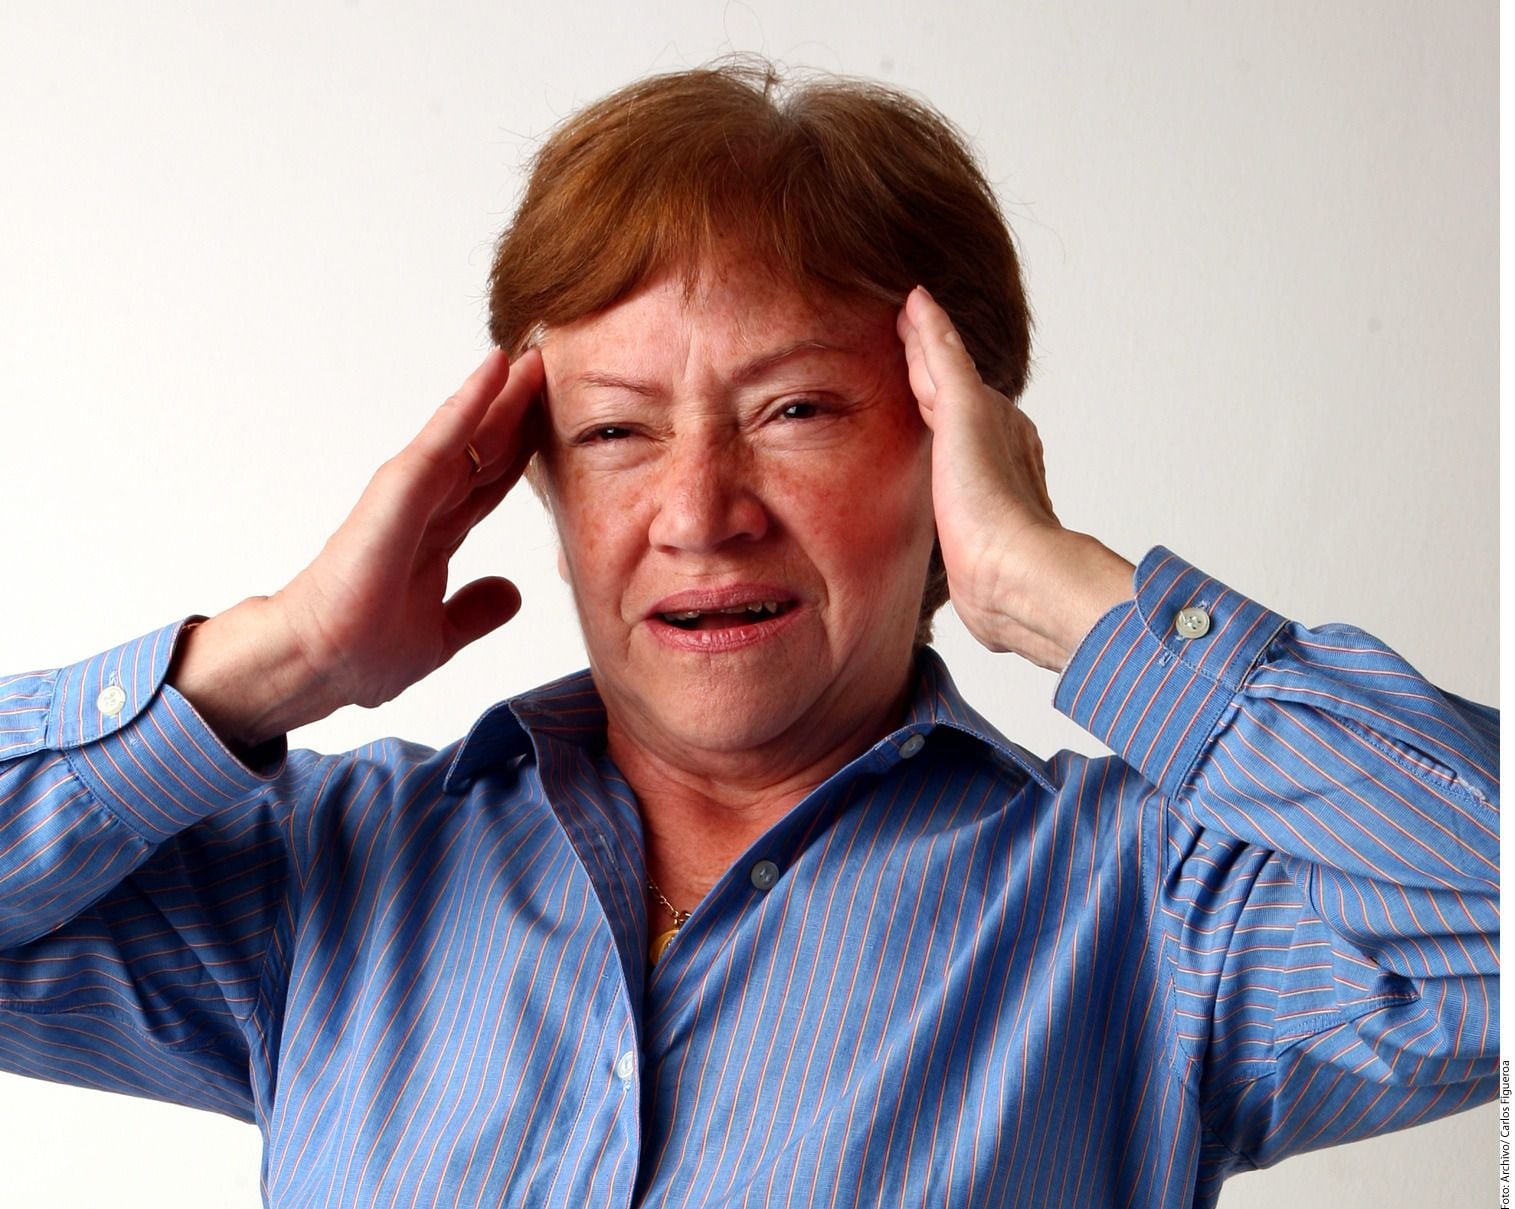 El dolor de cabeza es otro de los síntomas que se pueden presentar previo a la trombosis.